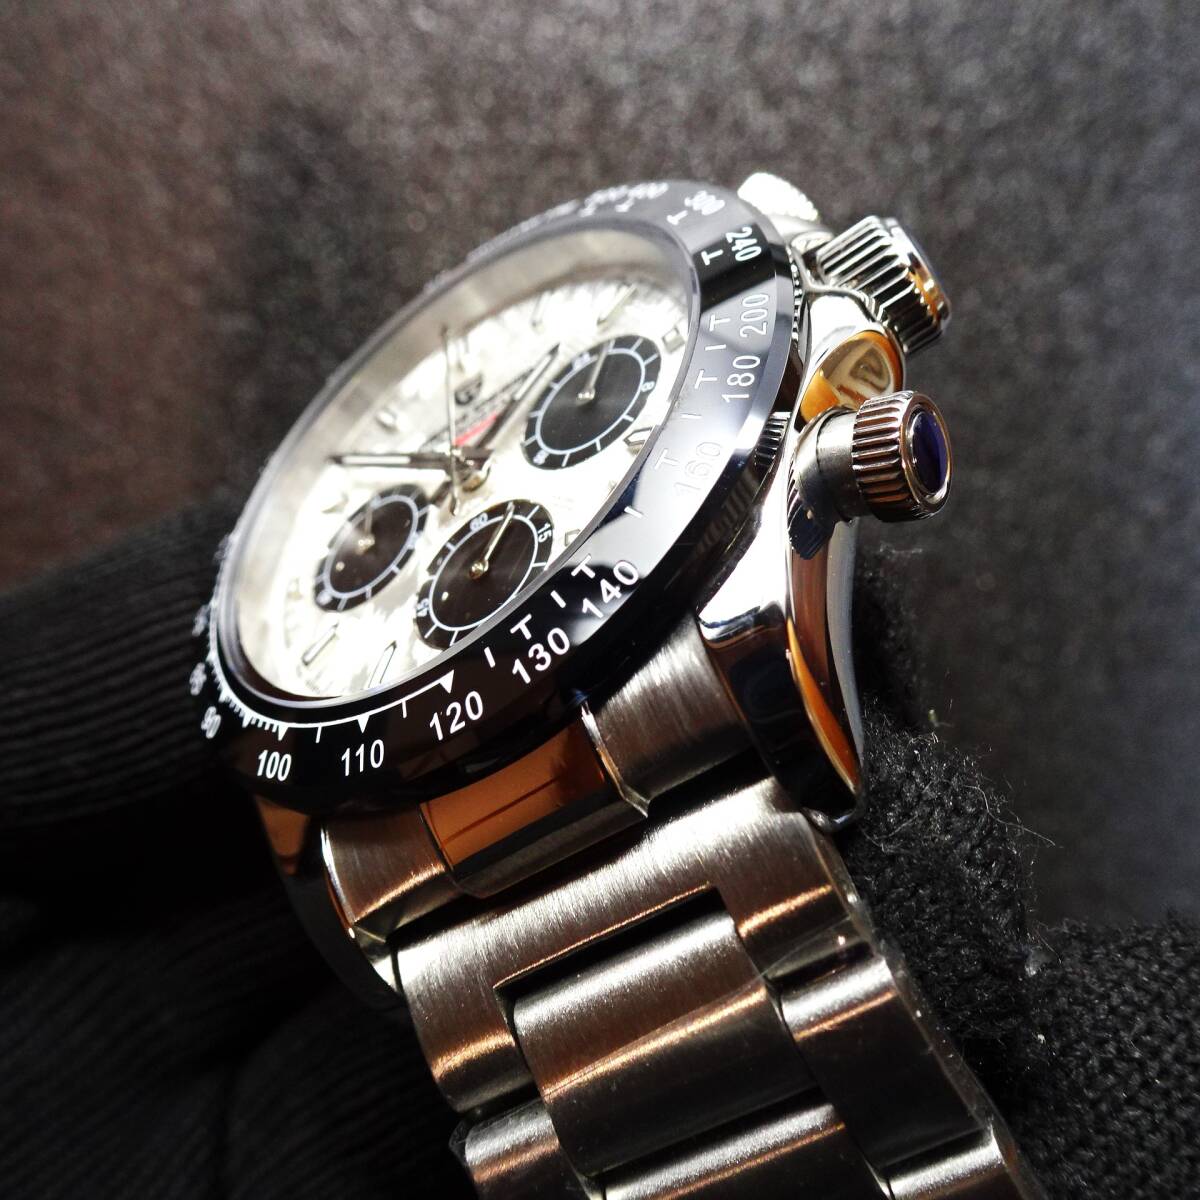 送料無料・新品・パガーニデザイン・メンズ・セイコー製VK63クロノグラフクオーツ式腕時計・フルメタル・オマージュウオッチ・PD-1664 _画像3